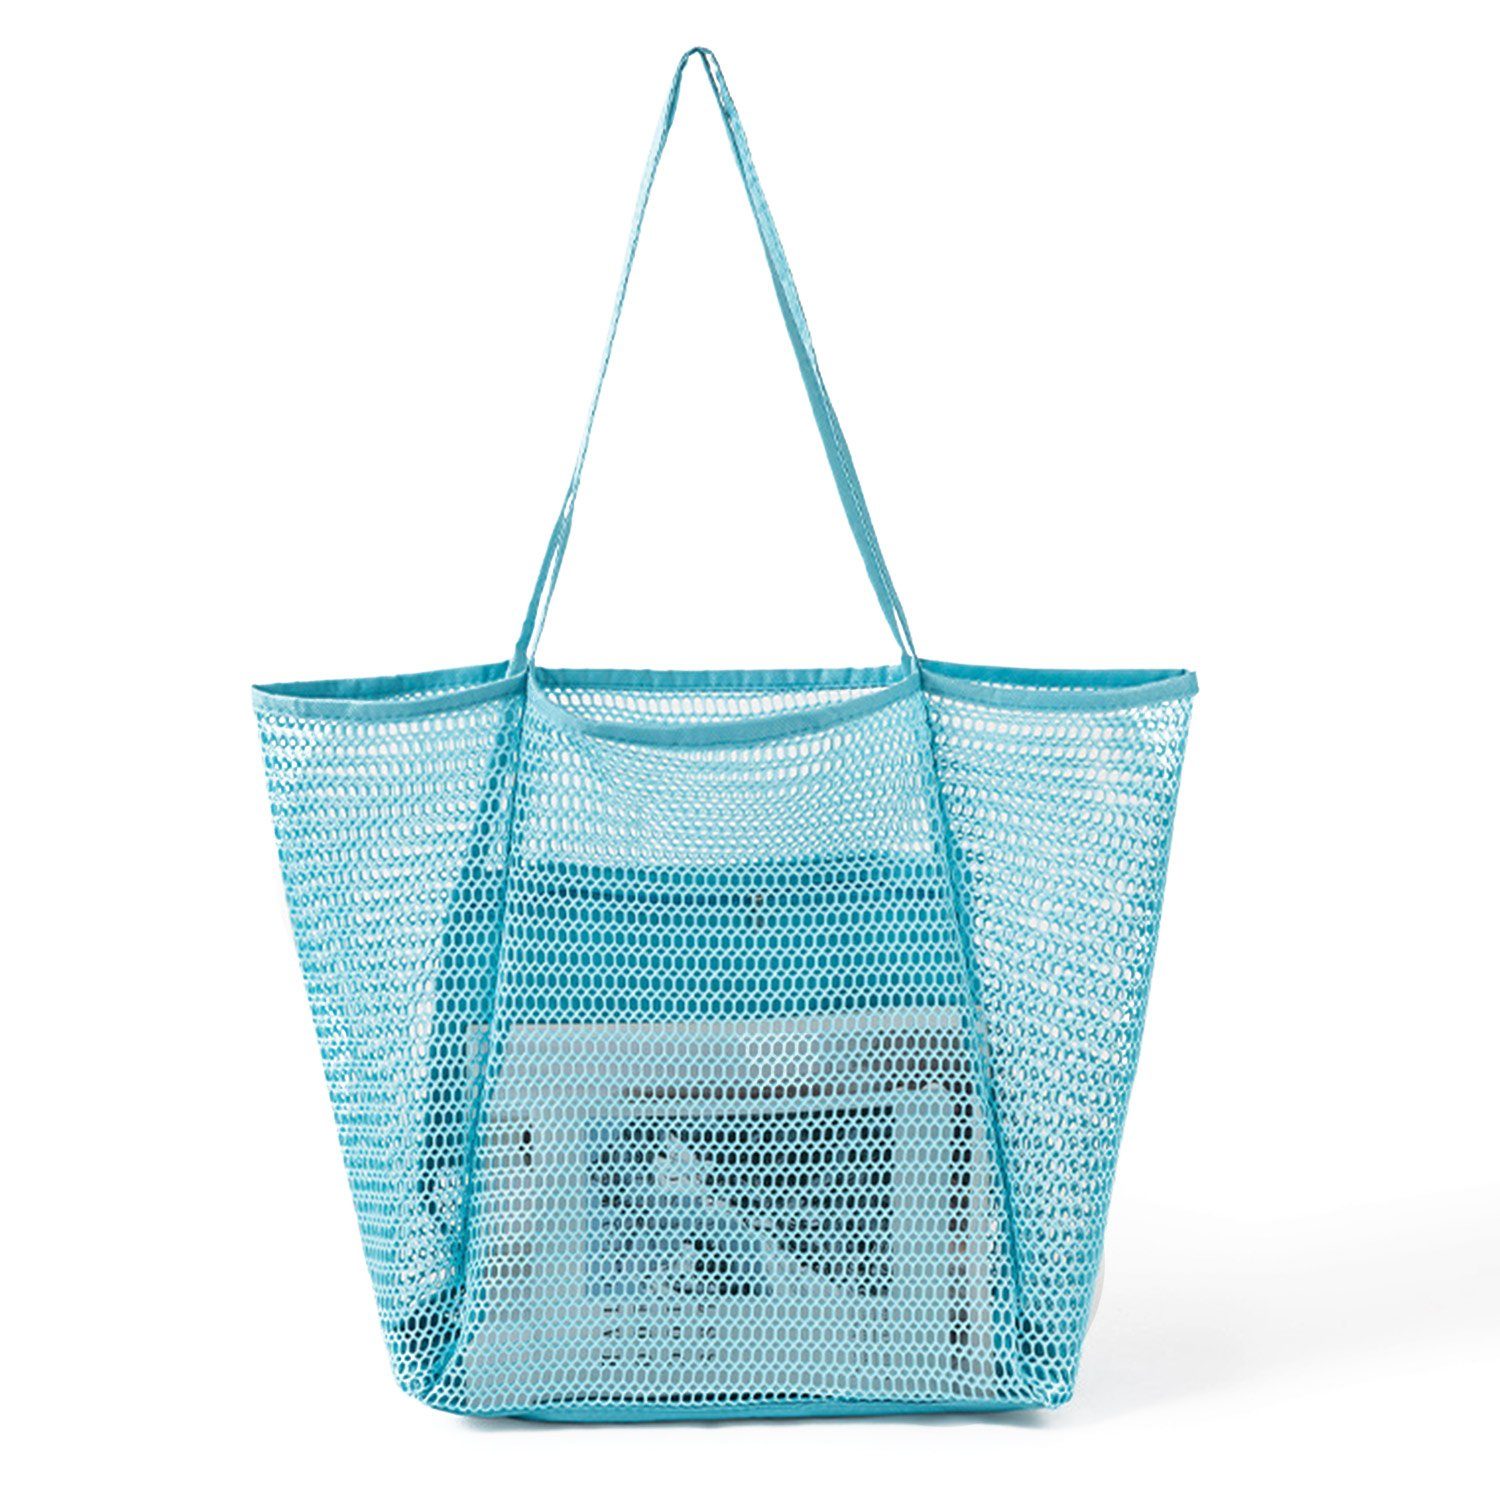 MAGICSHE Trachtentasche Mesh-Strandtasche, große Schultertasche, Innentasche mit Reißverschluss, Damen-Badetasche, Einkaufstasche Himmelblau